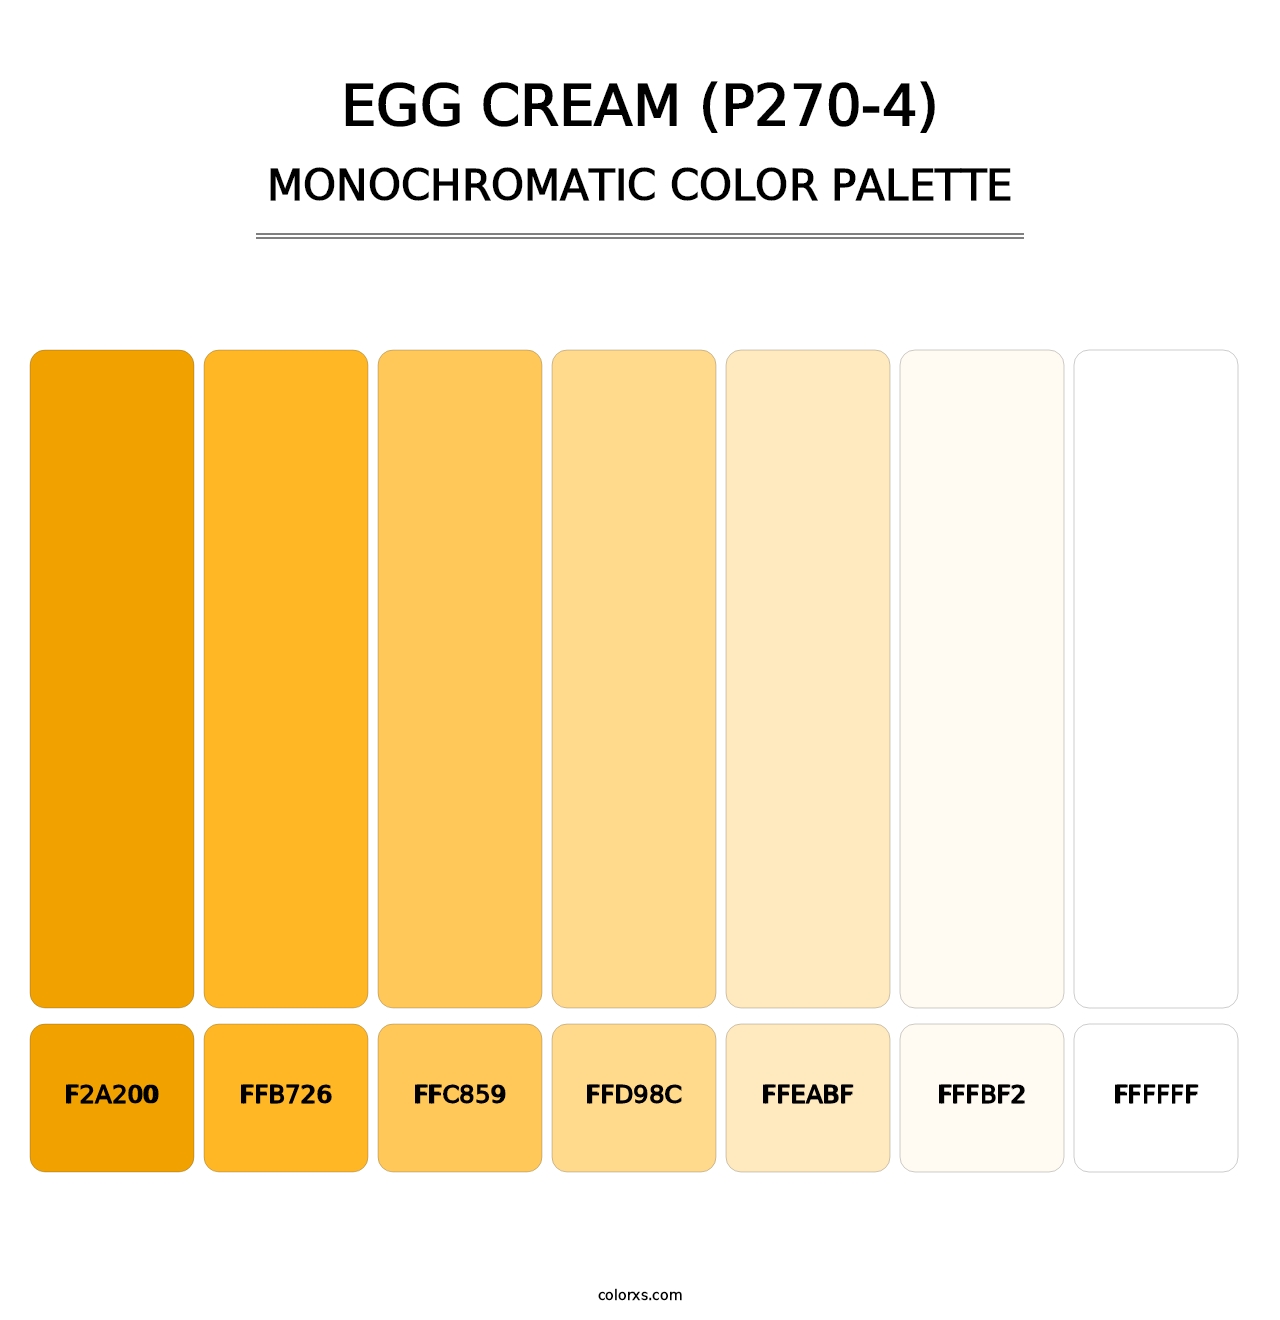 Egg Cream (P270-4) - Monochromatic Color Palette